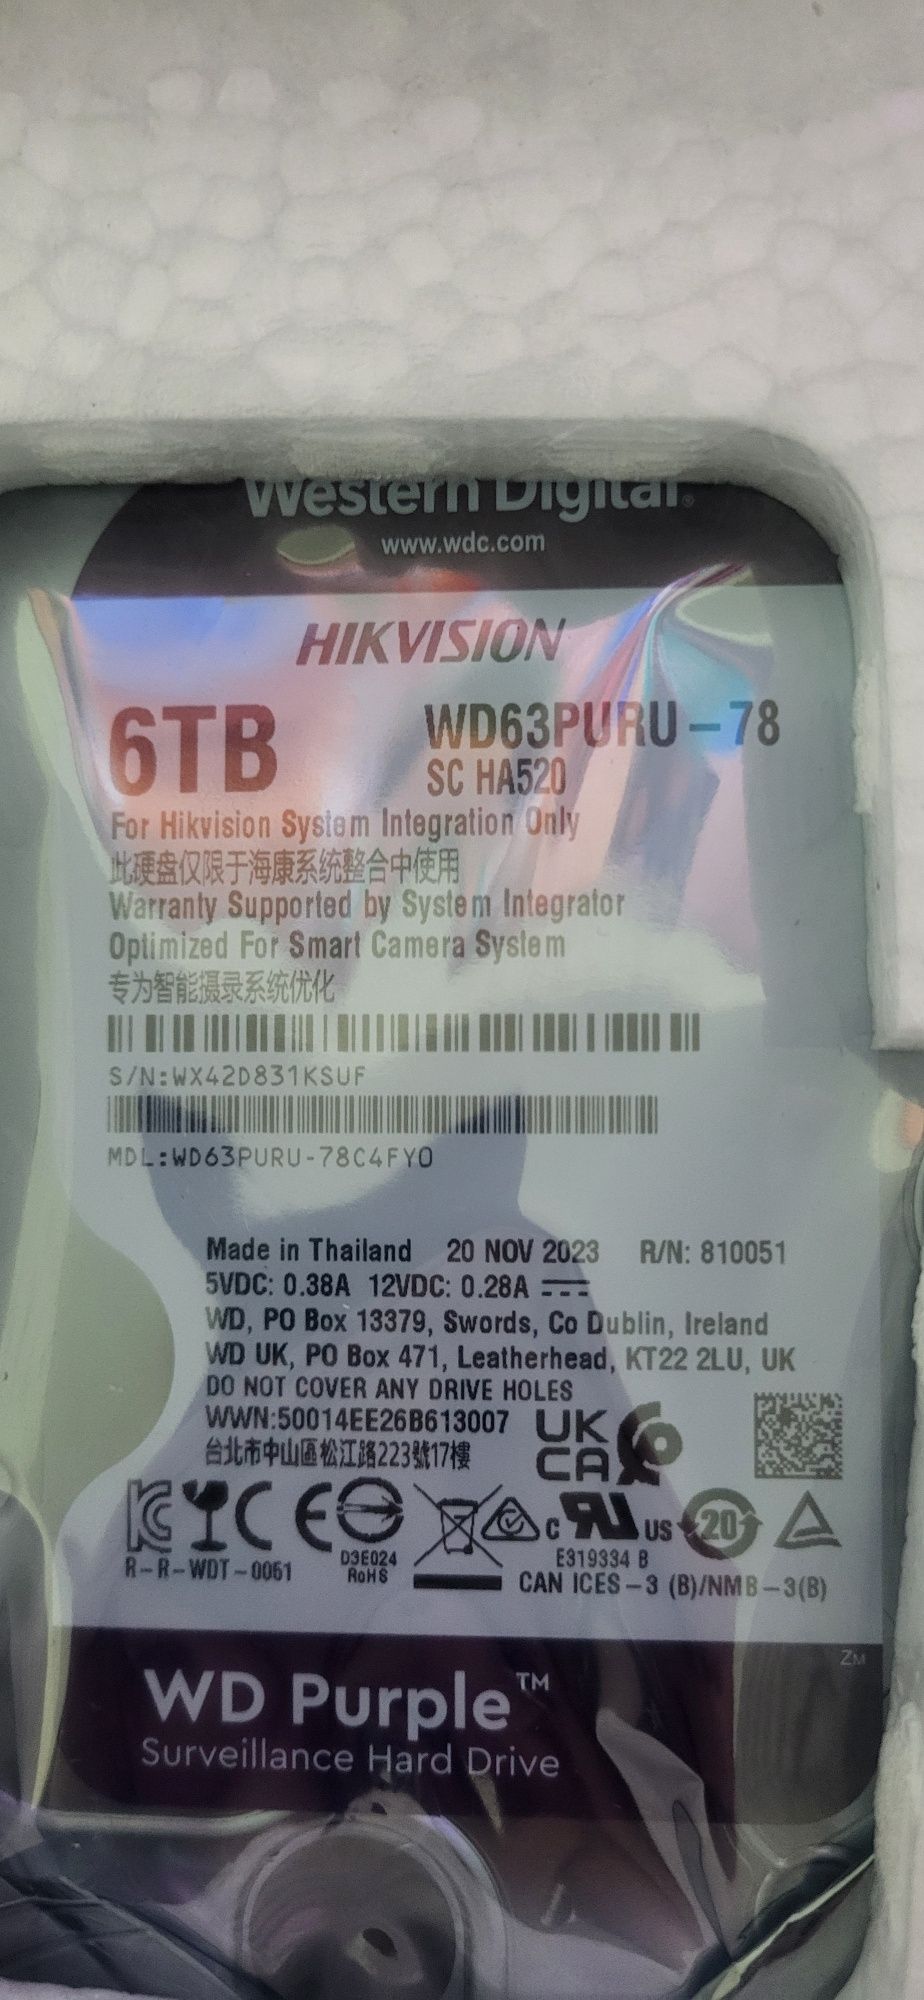 Продам новый жесткий диск WD   purple 6TB в упаковке